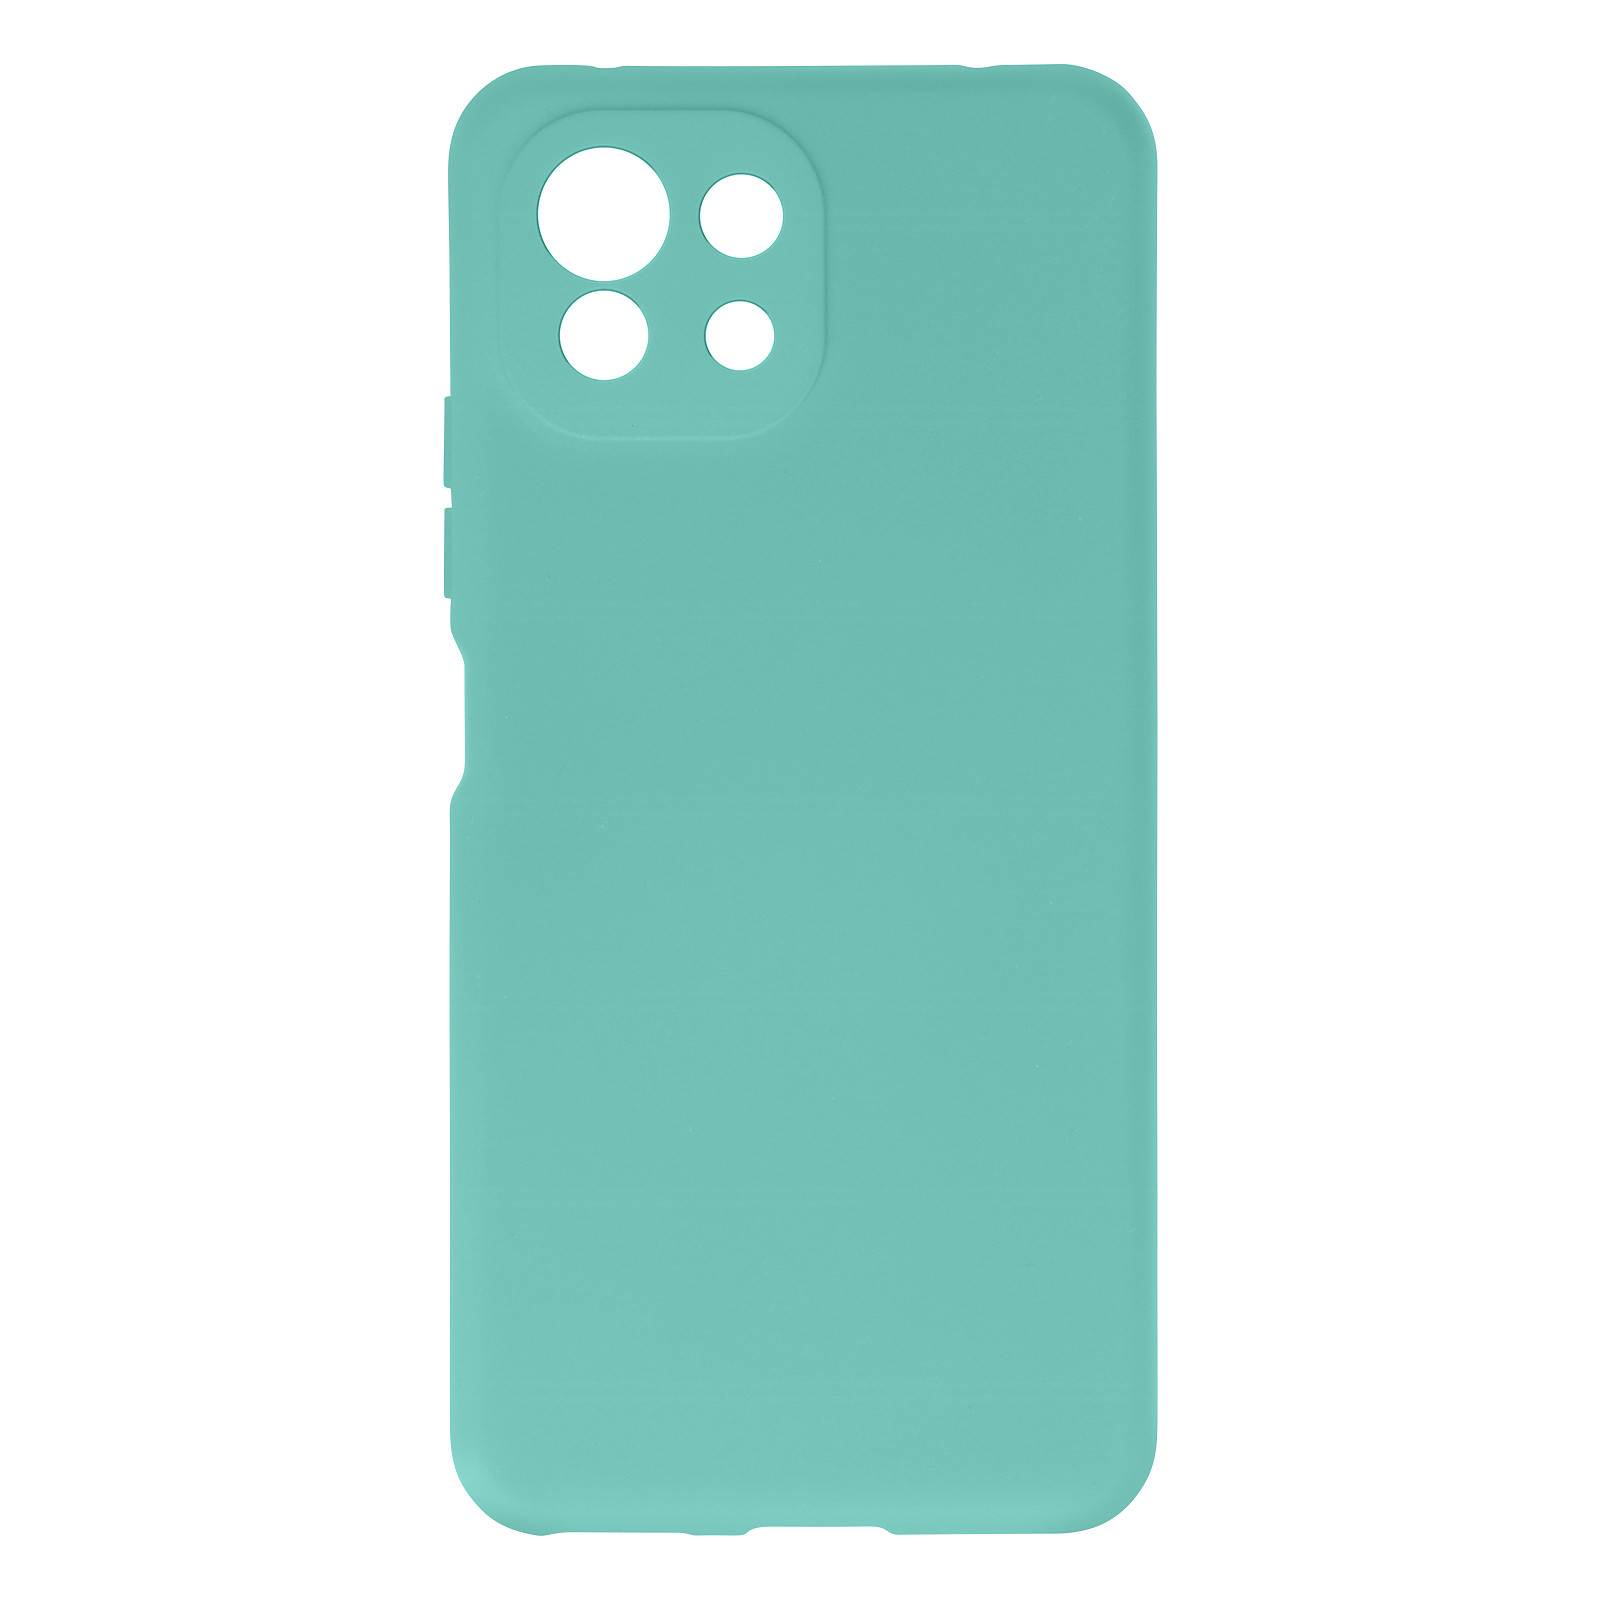 Avizar Coque pour Xiaomi Mi 11 Lite Silicone Semi-rigide Finition Soft Touch Fine turquoise - Coque telephone Avizar